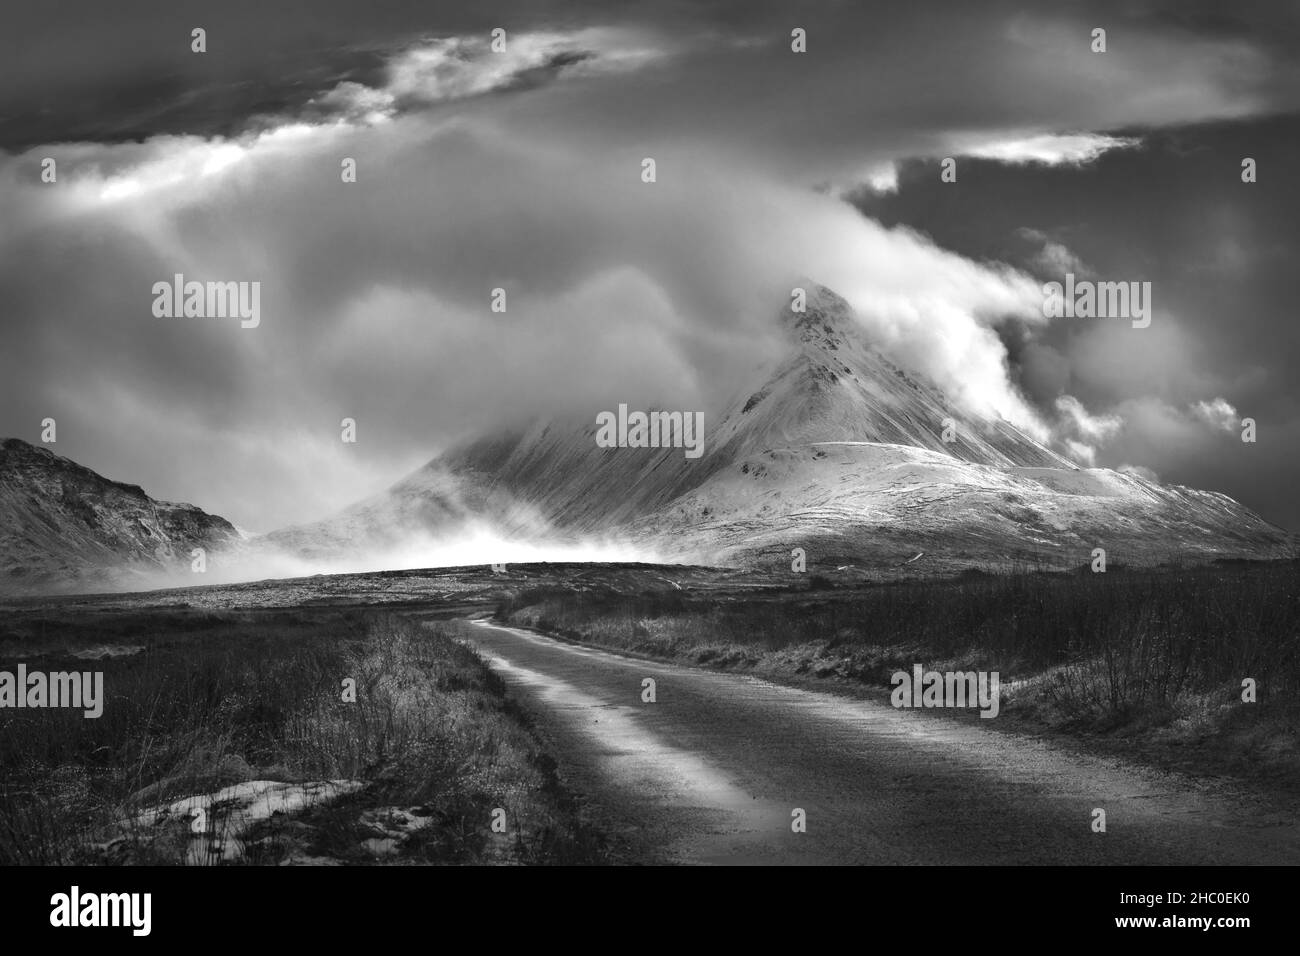 Der schneebedeckte Mount Errigal war von Sturmwolken umhüllt. Der Errigal-Gipfel im Westen von Donegal ist ein beliebter Ort für Touristen und Bergsteiger. Stockfoto